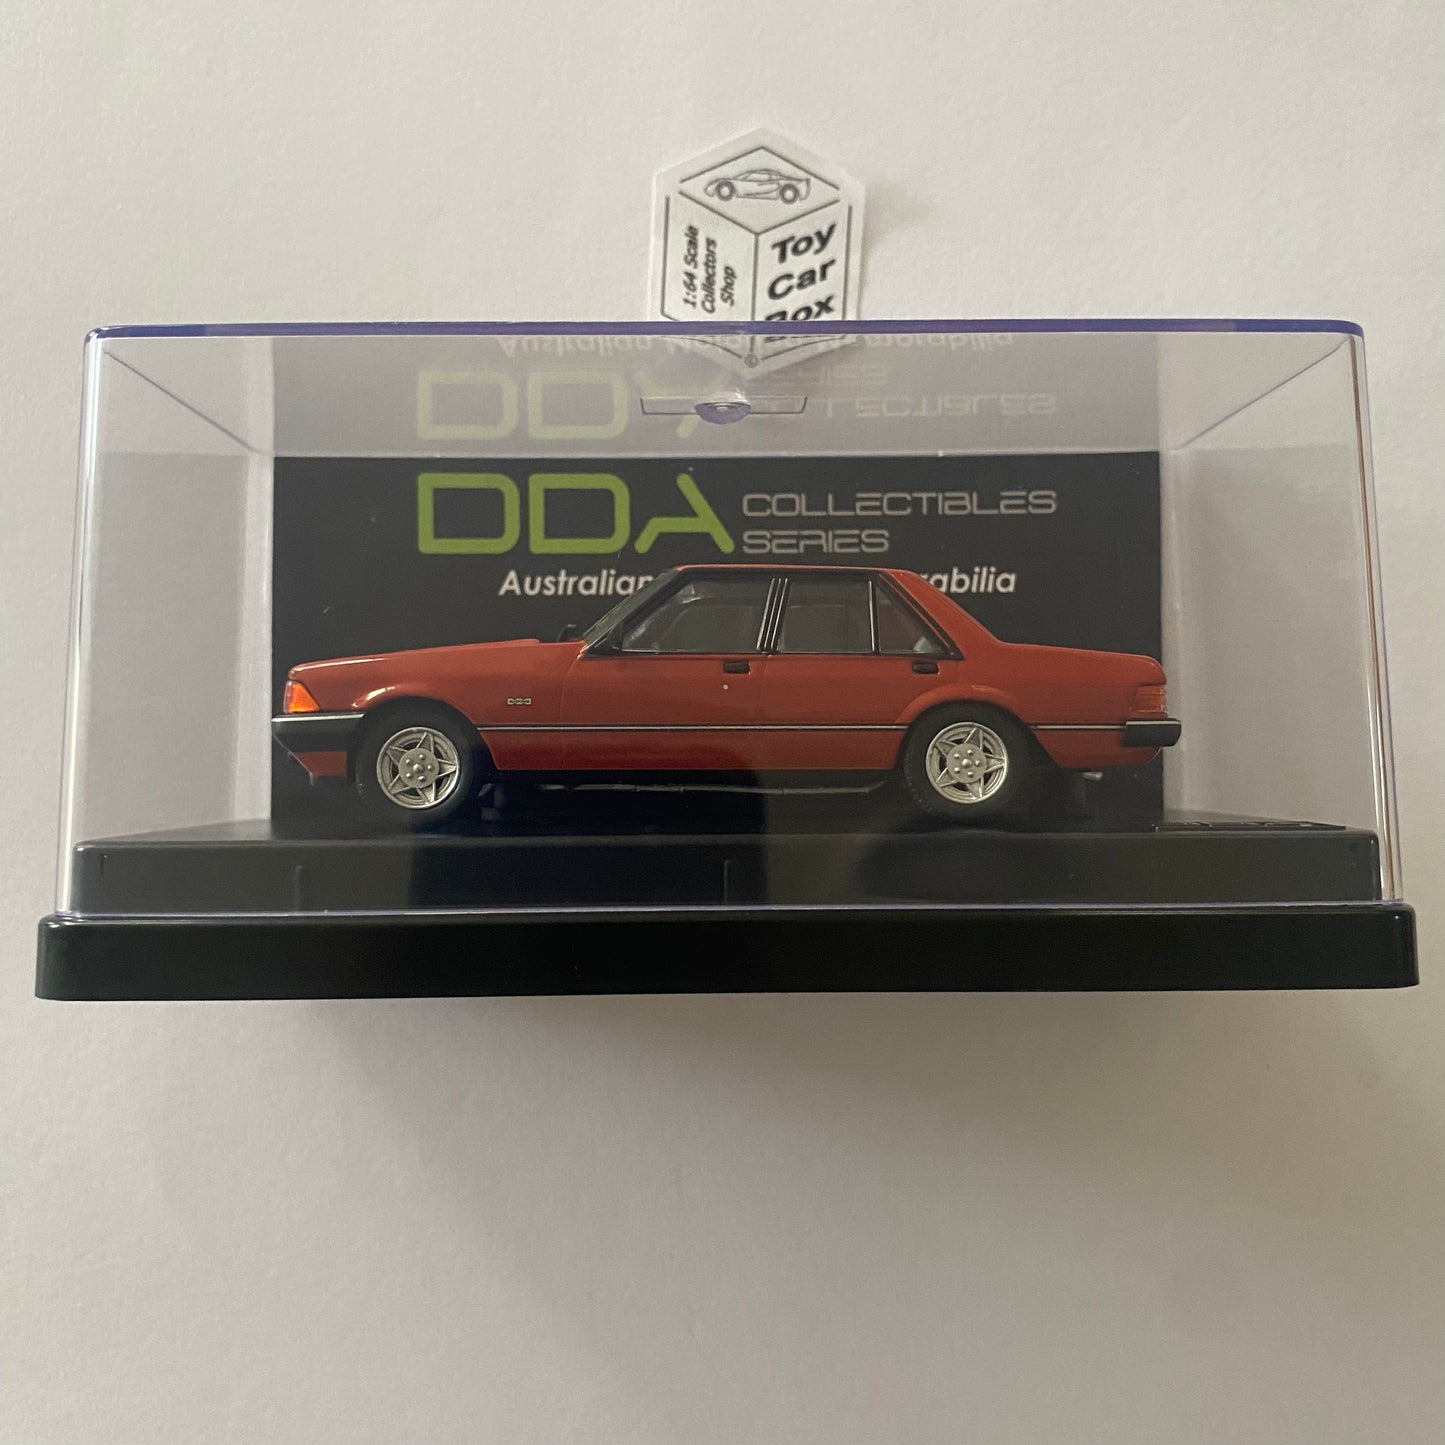 DDA Collectible 1:43 - 1980 Ford Falcon XD ESP (#84-1 Chestnut) DD21